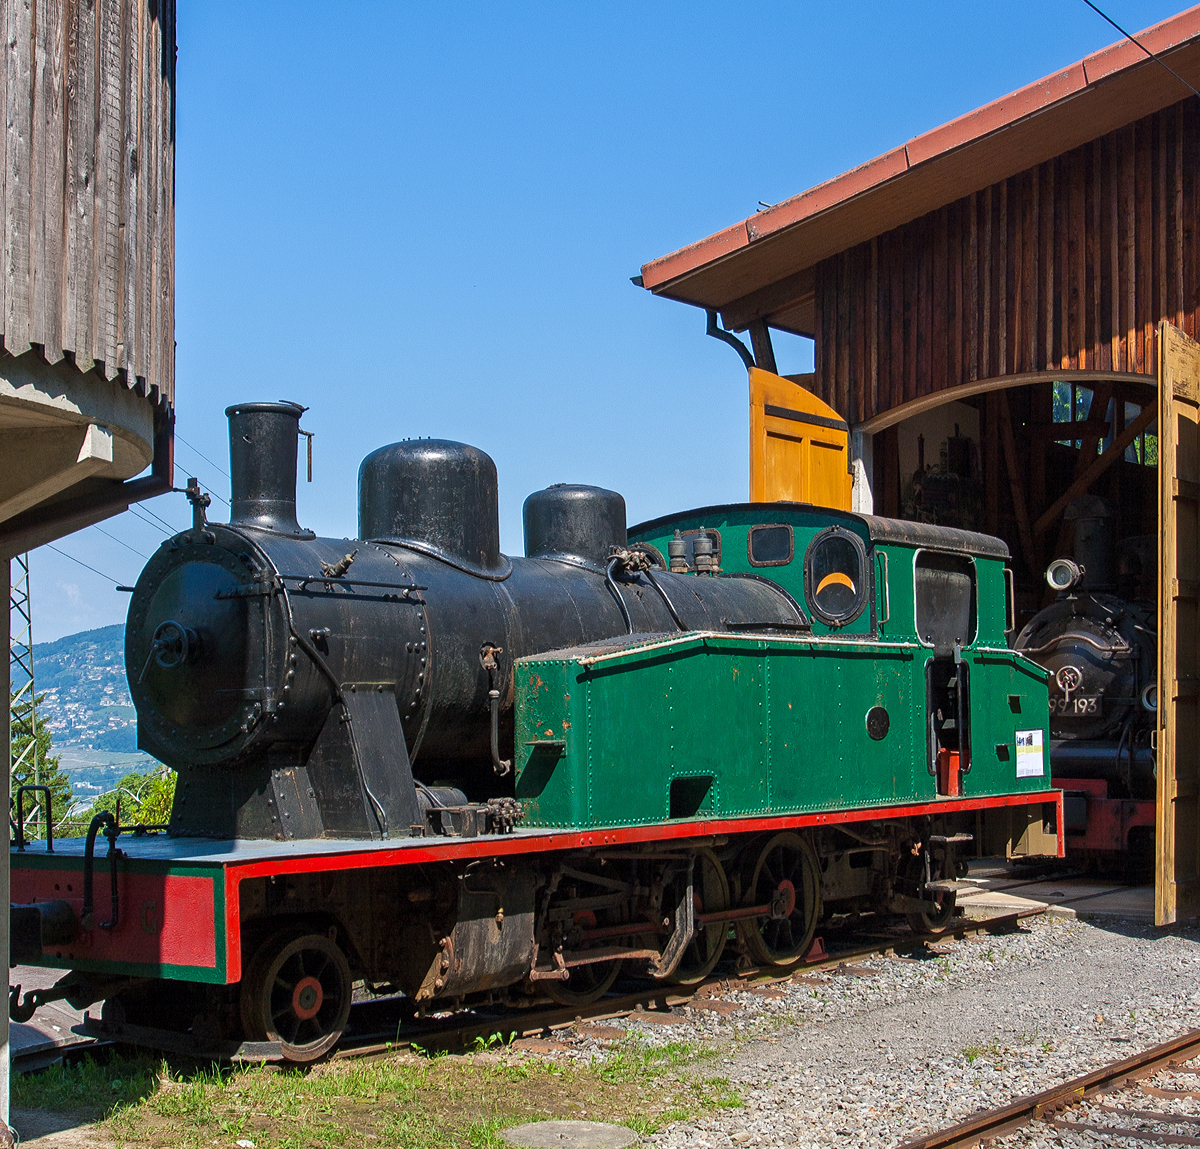 Eine Spanierin in der Schweiz - Die 1.000 mm G 3/5 Tenderlokomotive N° 23 der ursprünglichen Lokalbahn von Olot nach Girona (Tren d’Olot), in Katalonien (Spanien). Die Lok (vom Typ 131T) wurde 1926 bei La Maquinista Terrestre y Marítima in Barcelona unter der Fabriknummer 282 gebaut. 
Die 56 km lange Bahnstrecke war 1892 bis 1969 in Betrieb, und ist heute wohl ein Bahntrassenradweg.
Die Lok wurde von der Museumsbahn Blonay–Chamby gerettet, hier am 27.05.2012 im Museum Chaulin.
Sie hat ein Gewicht von 31 t, eine Leistung von 350 PS und eine Höchstgeschwindigkeit von 35 km/h.